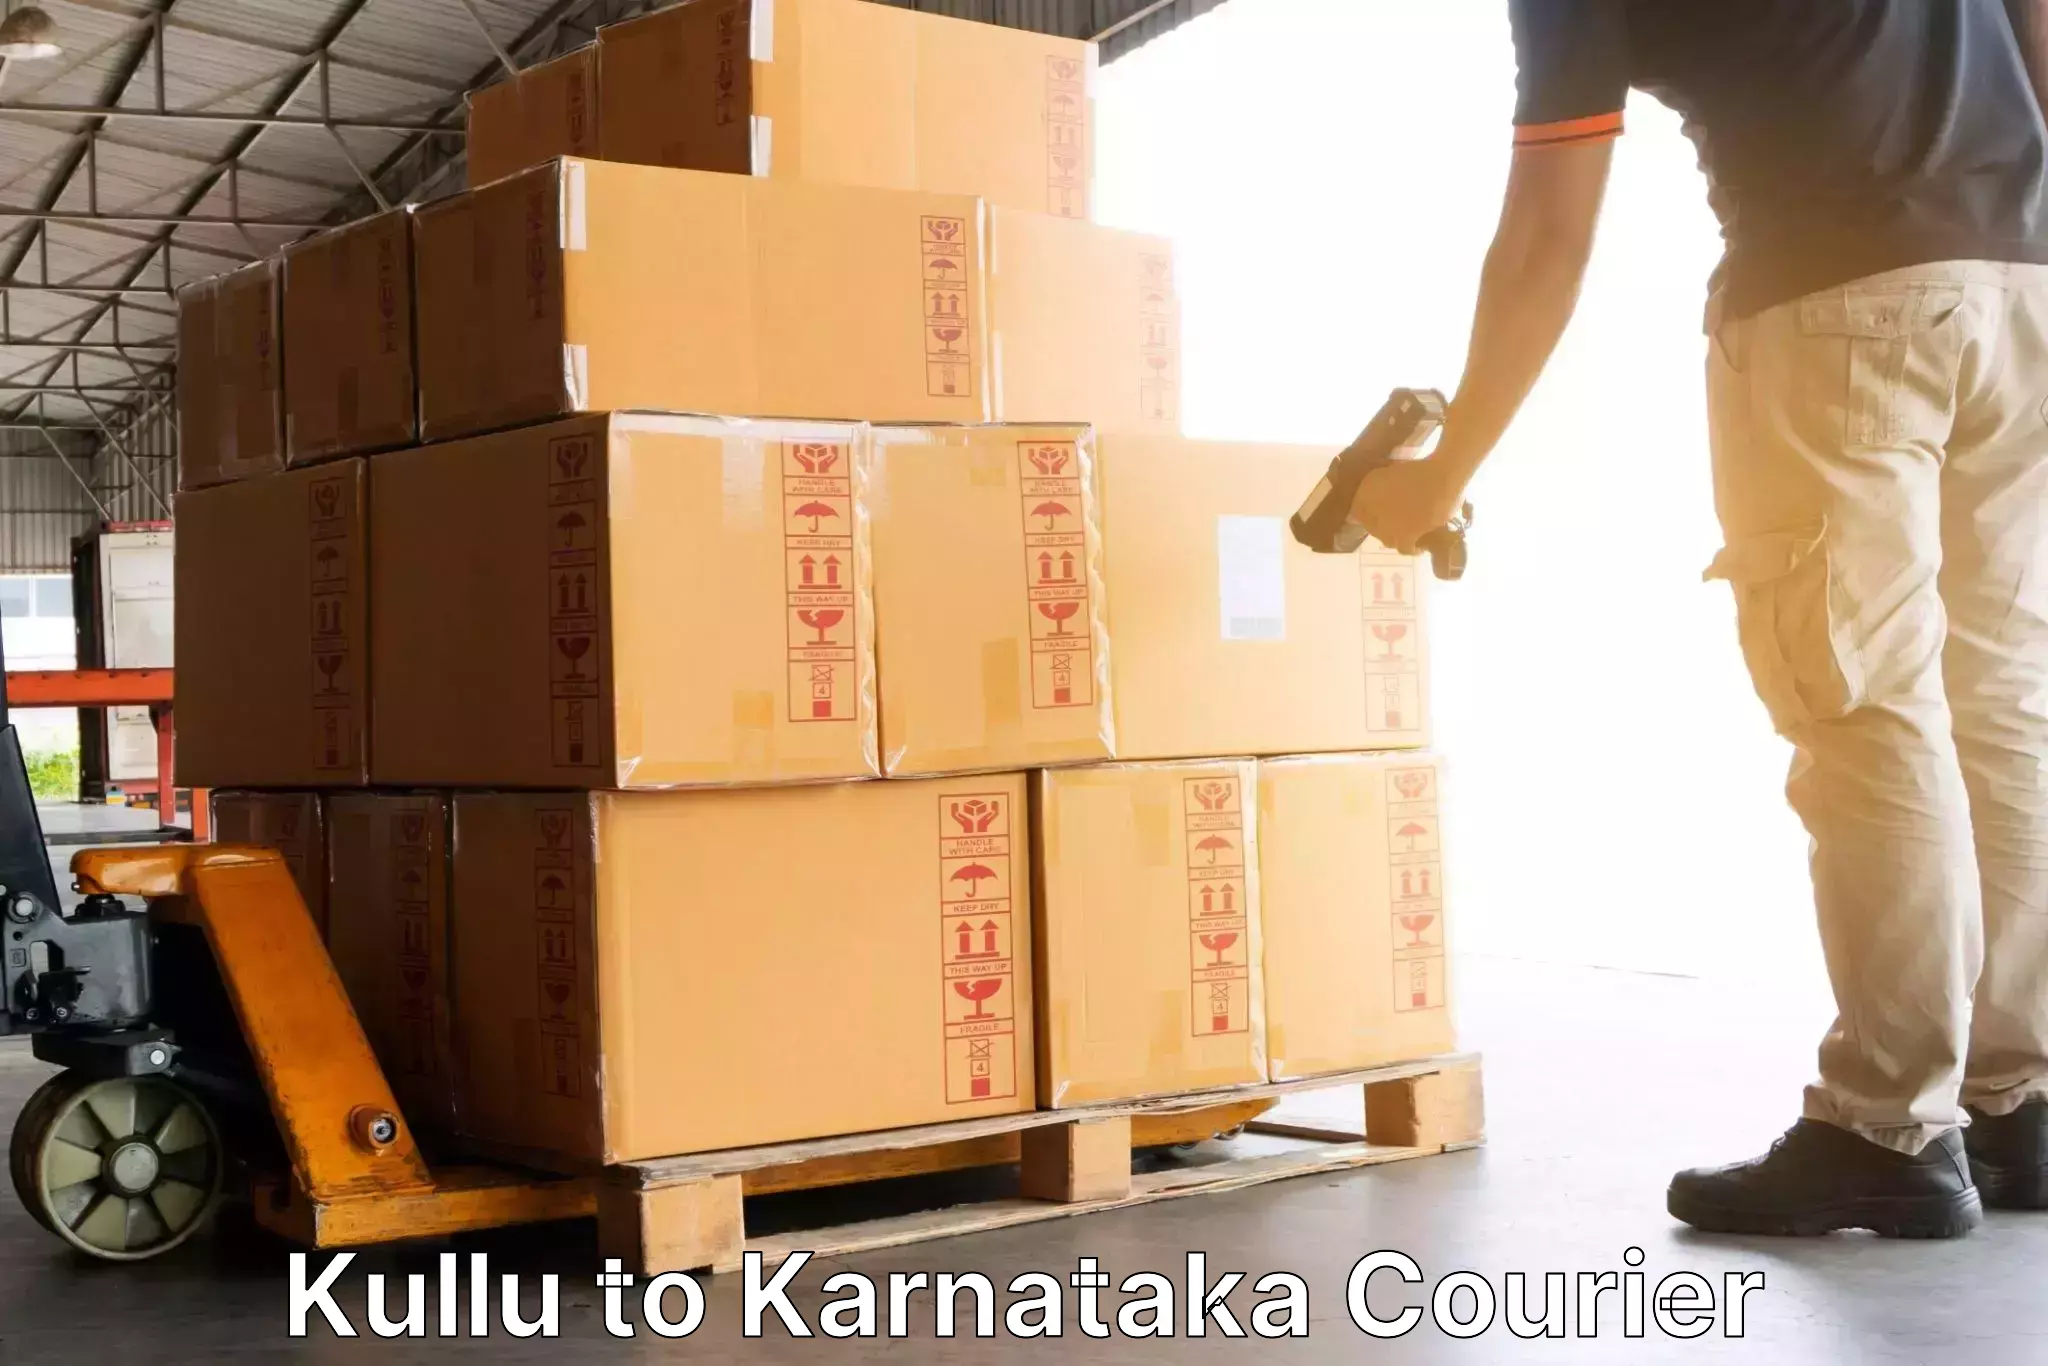 Urgent courier needs in Kullu to Mysore